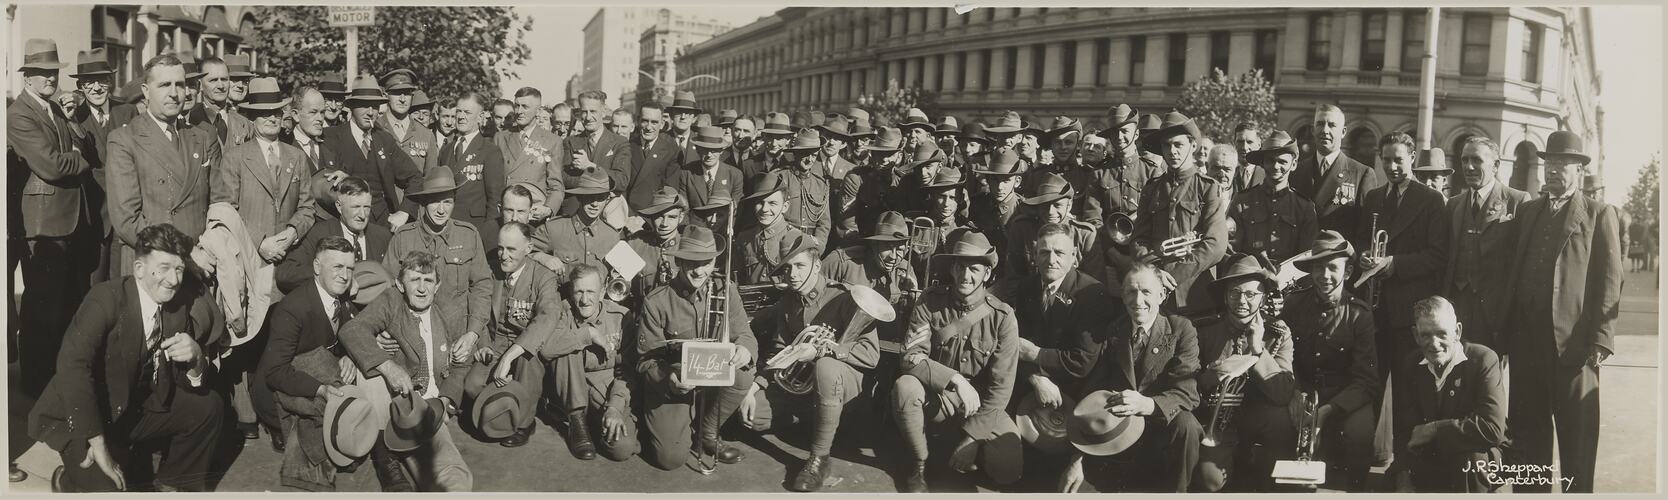 14th Battalion, Anzac Day Marchers, Melbourne, circa 1930s